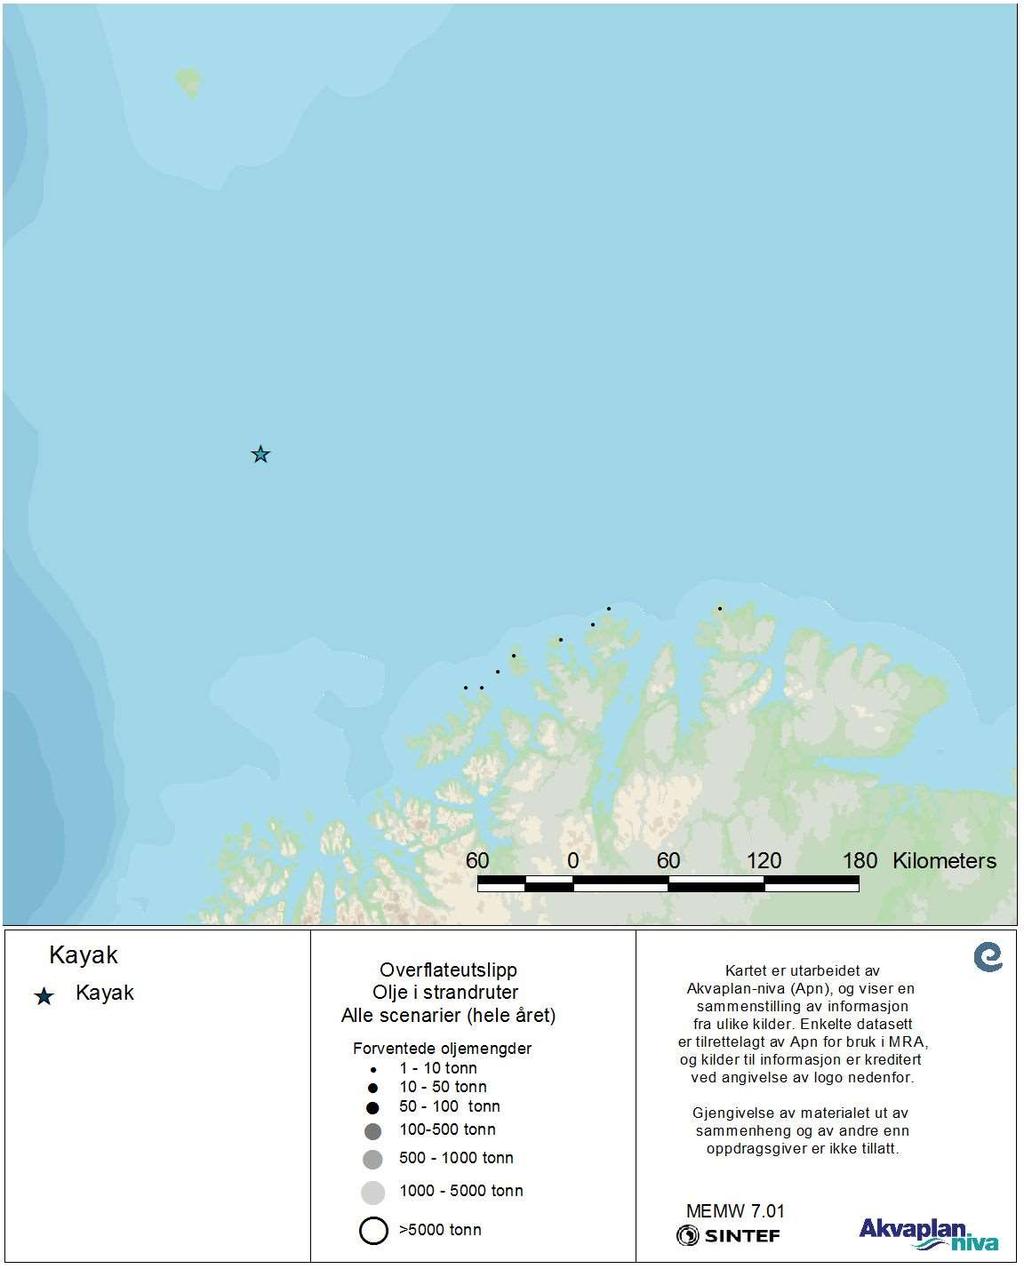 Figur 8 Sannsynlige oljemengder i strandruter beregnet fra alle simuleringene av overflateutslipp fra Kayak (simuleringer fra alle måneder).